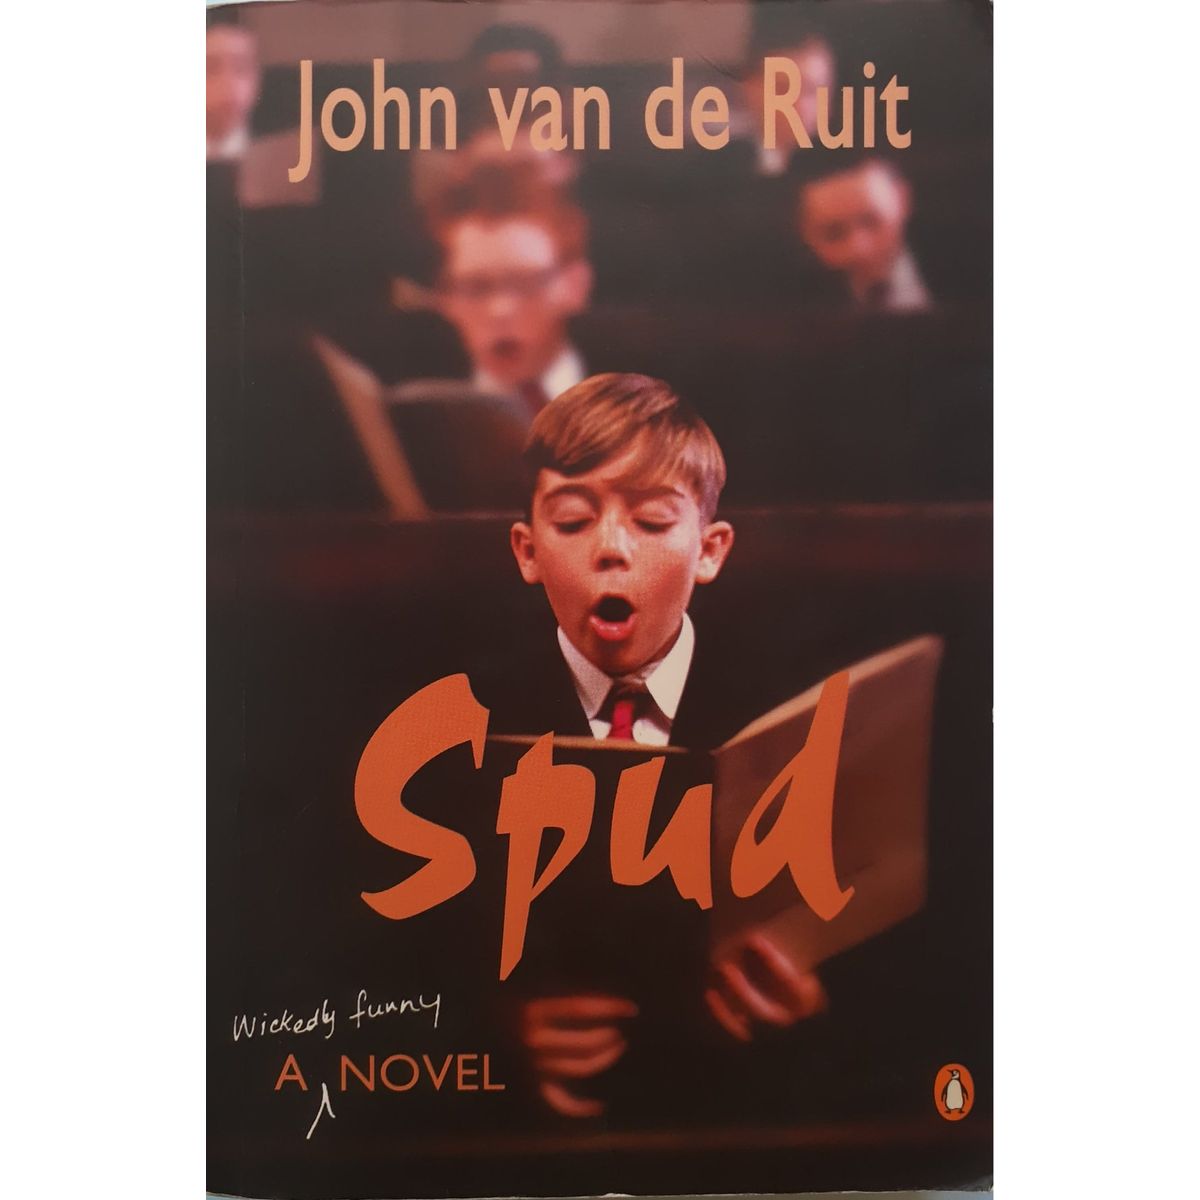 ISBN: 9780143024842 / 0143024841 - Spud by John van de Ruit [2005]